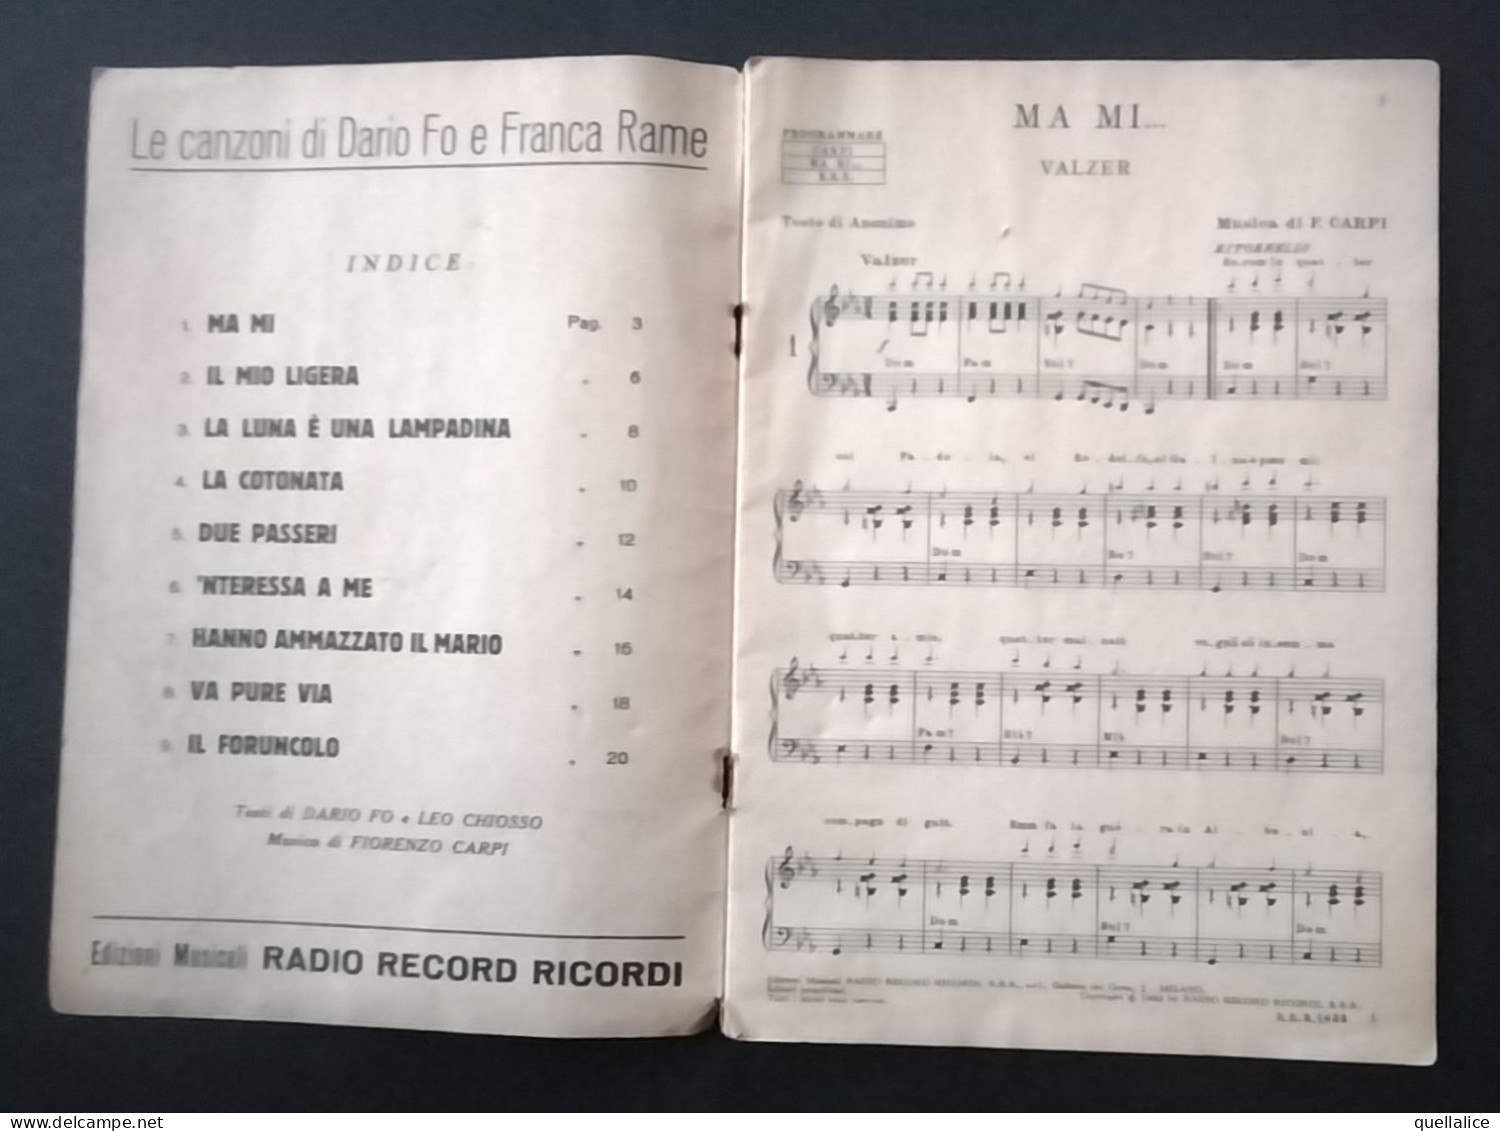 03925 "LE CANZONI DI DARIO FO E FRANCA RAME-ALBUM PROFESSIONALE -EDIZIONI MUSICALI RADIO RECORD RICORDI-MILANO" SPARTITO - Scores & Partitions